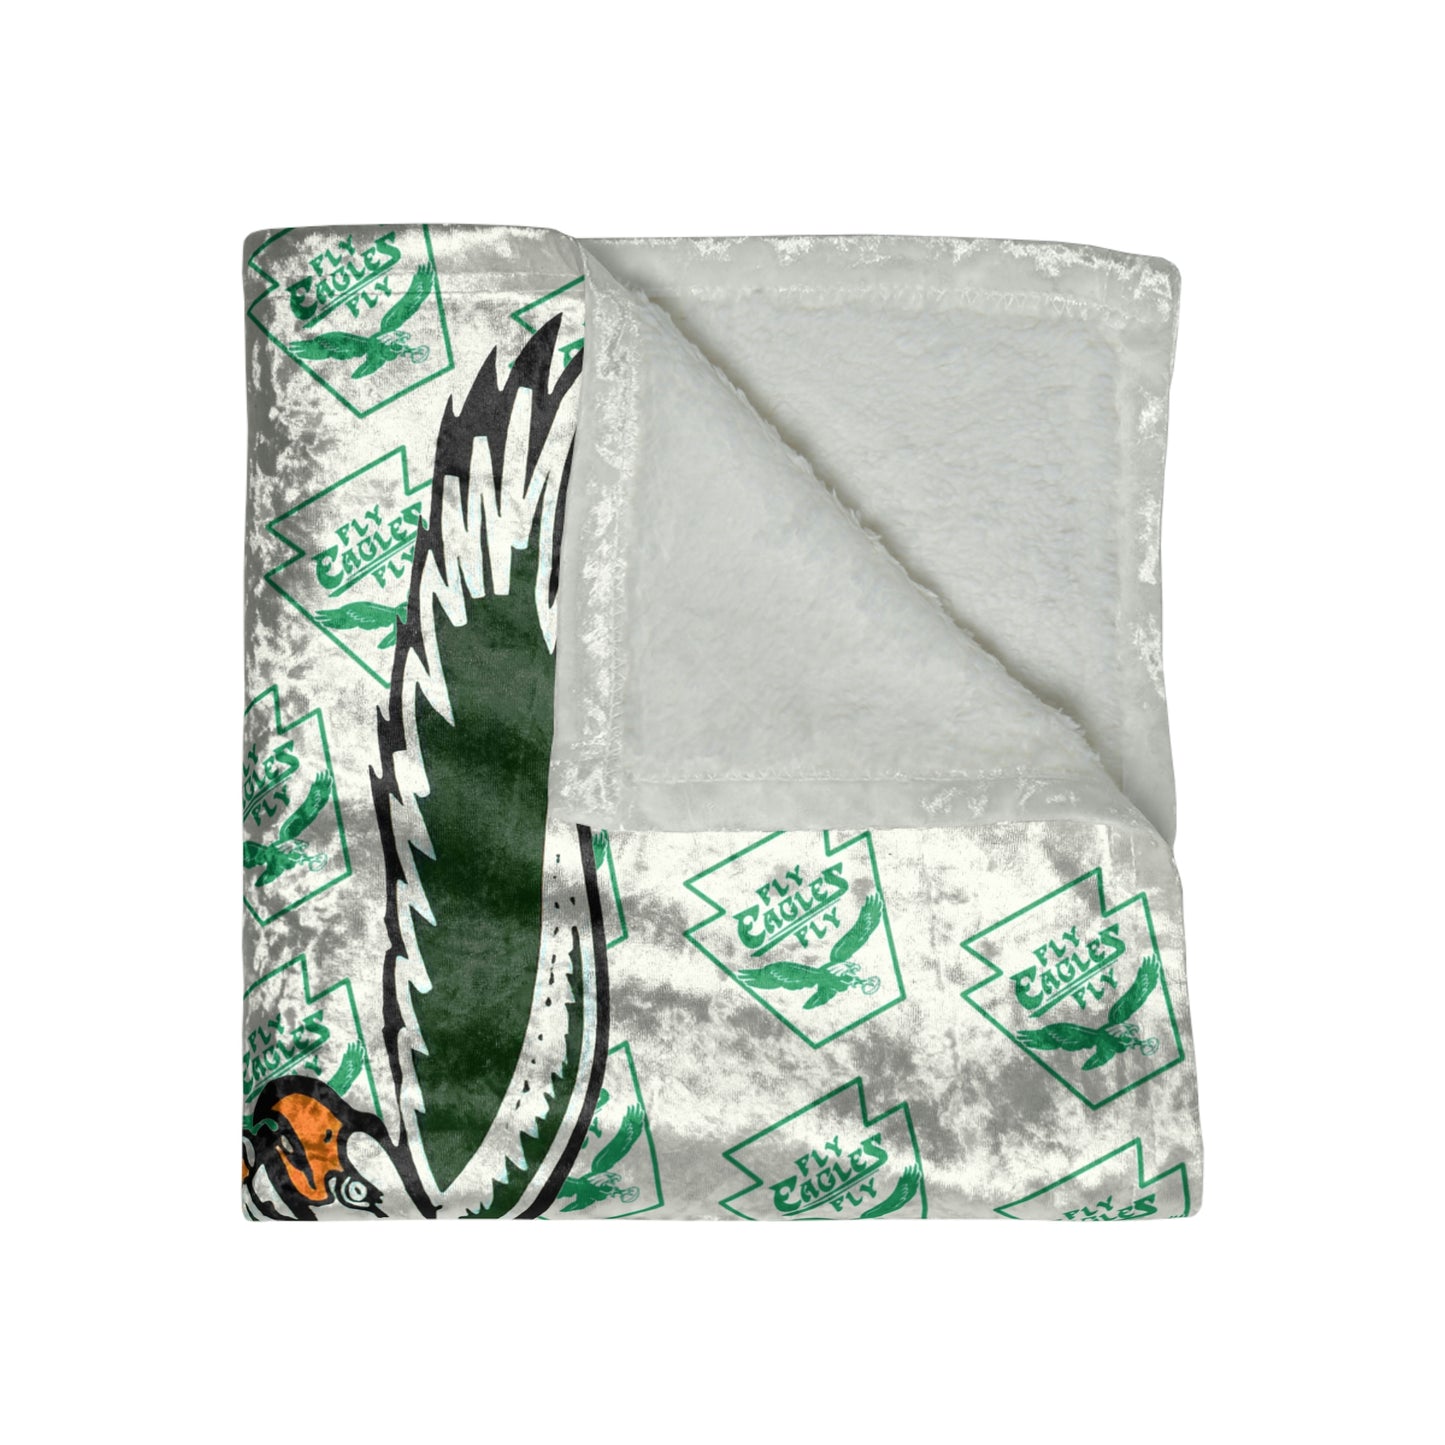 White Philadelphia Eagles Crushed Velvet Blanket